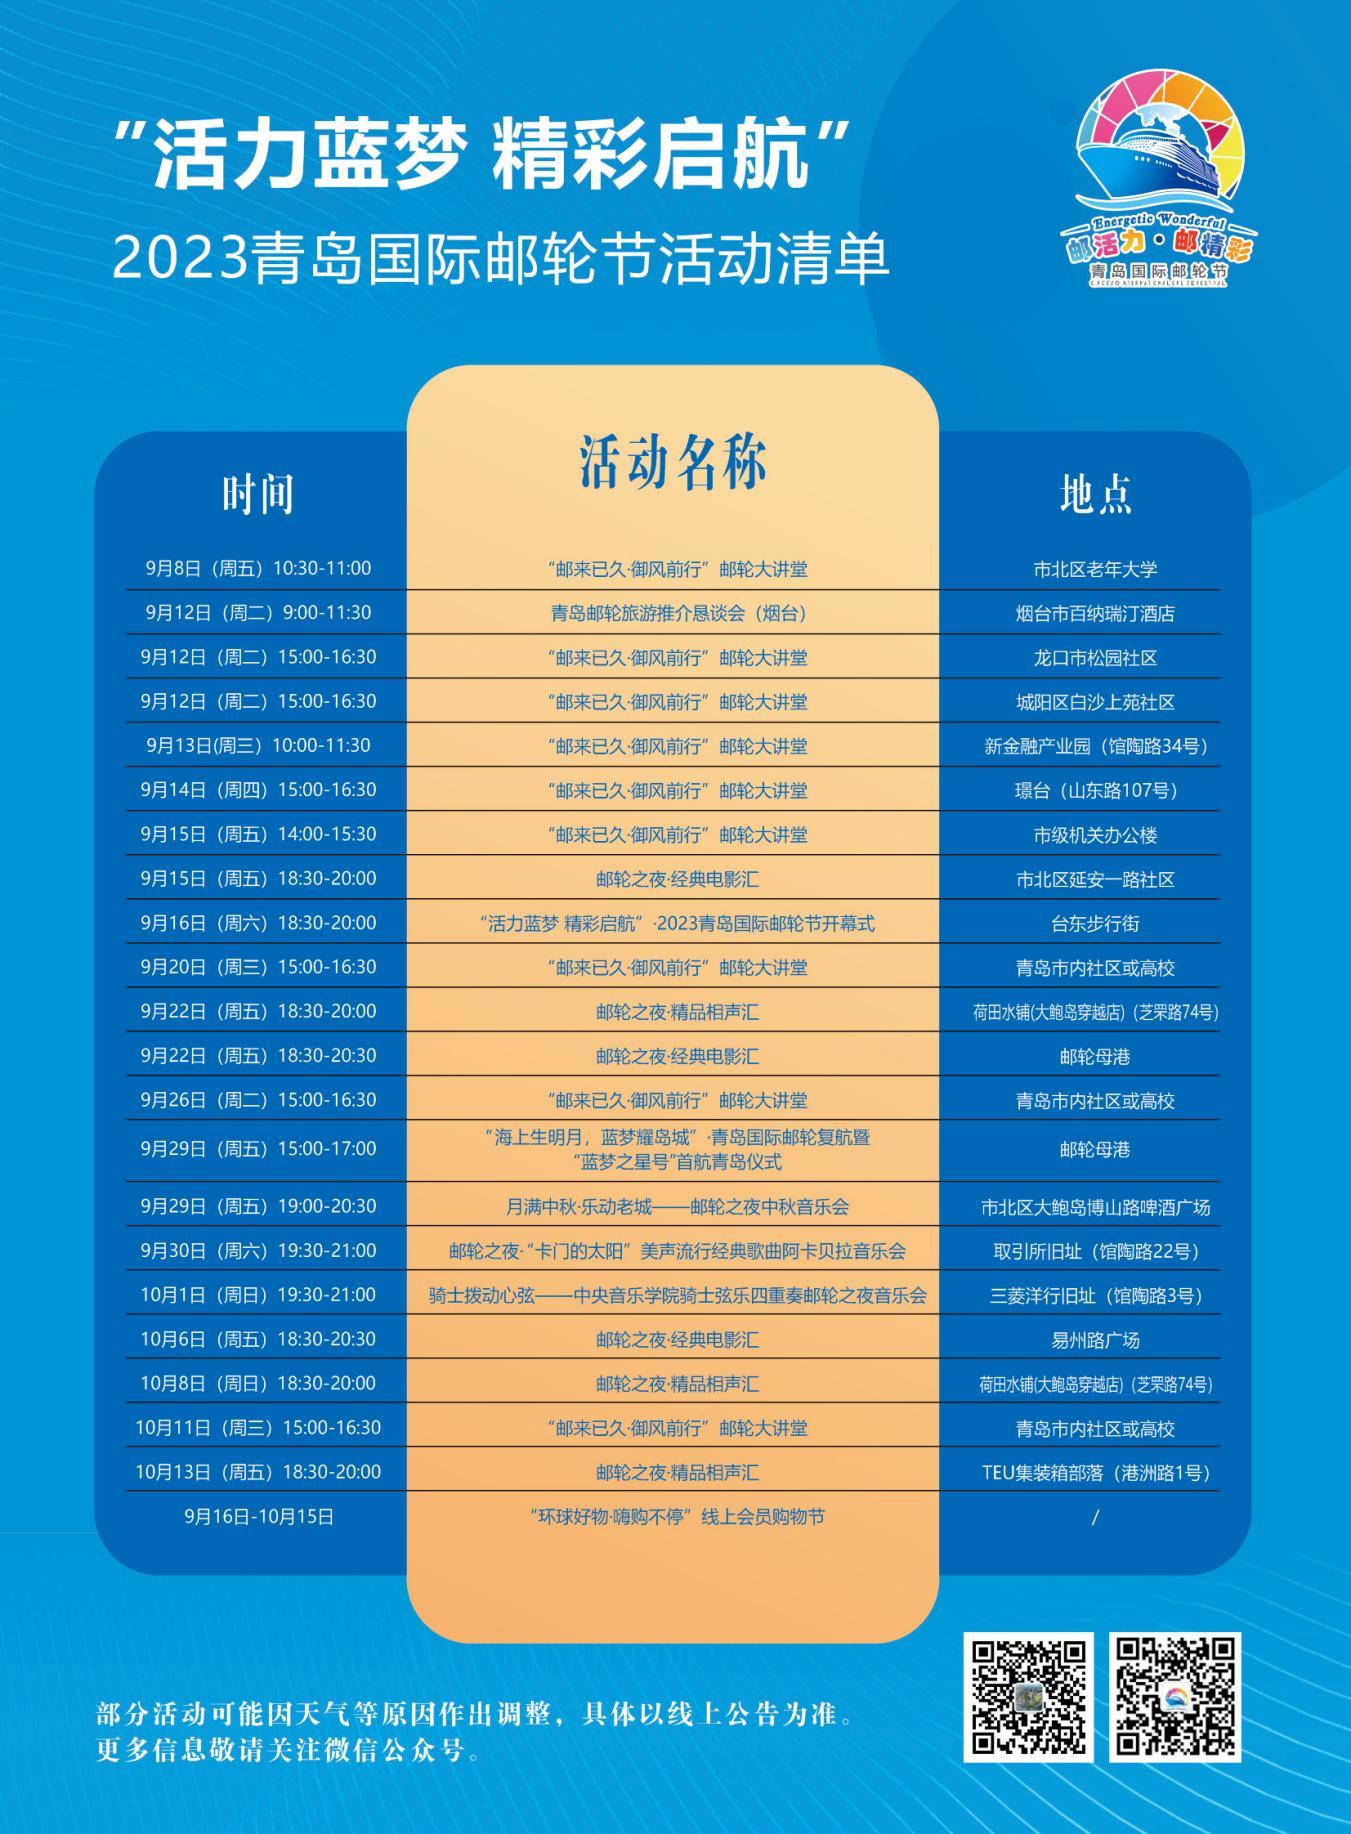 2023青岛国际邮轮节精彩启幕 开启为期一个月邮轮文化盛宴